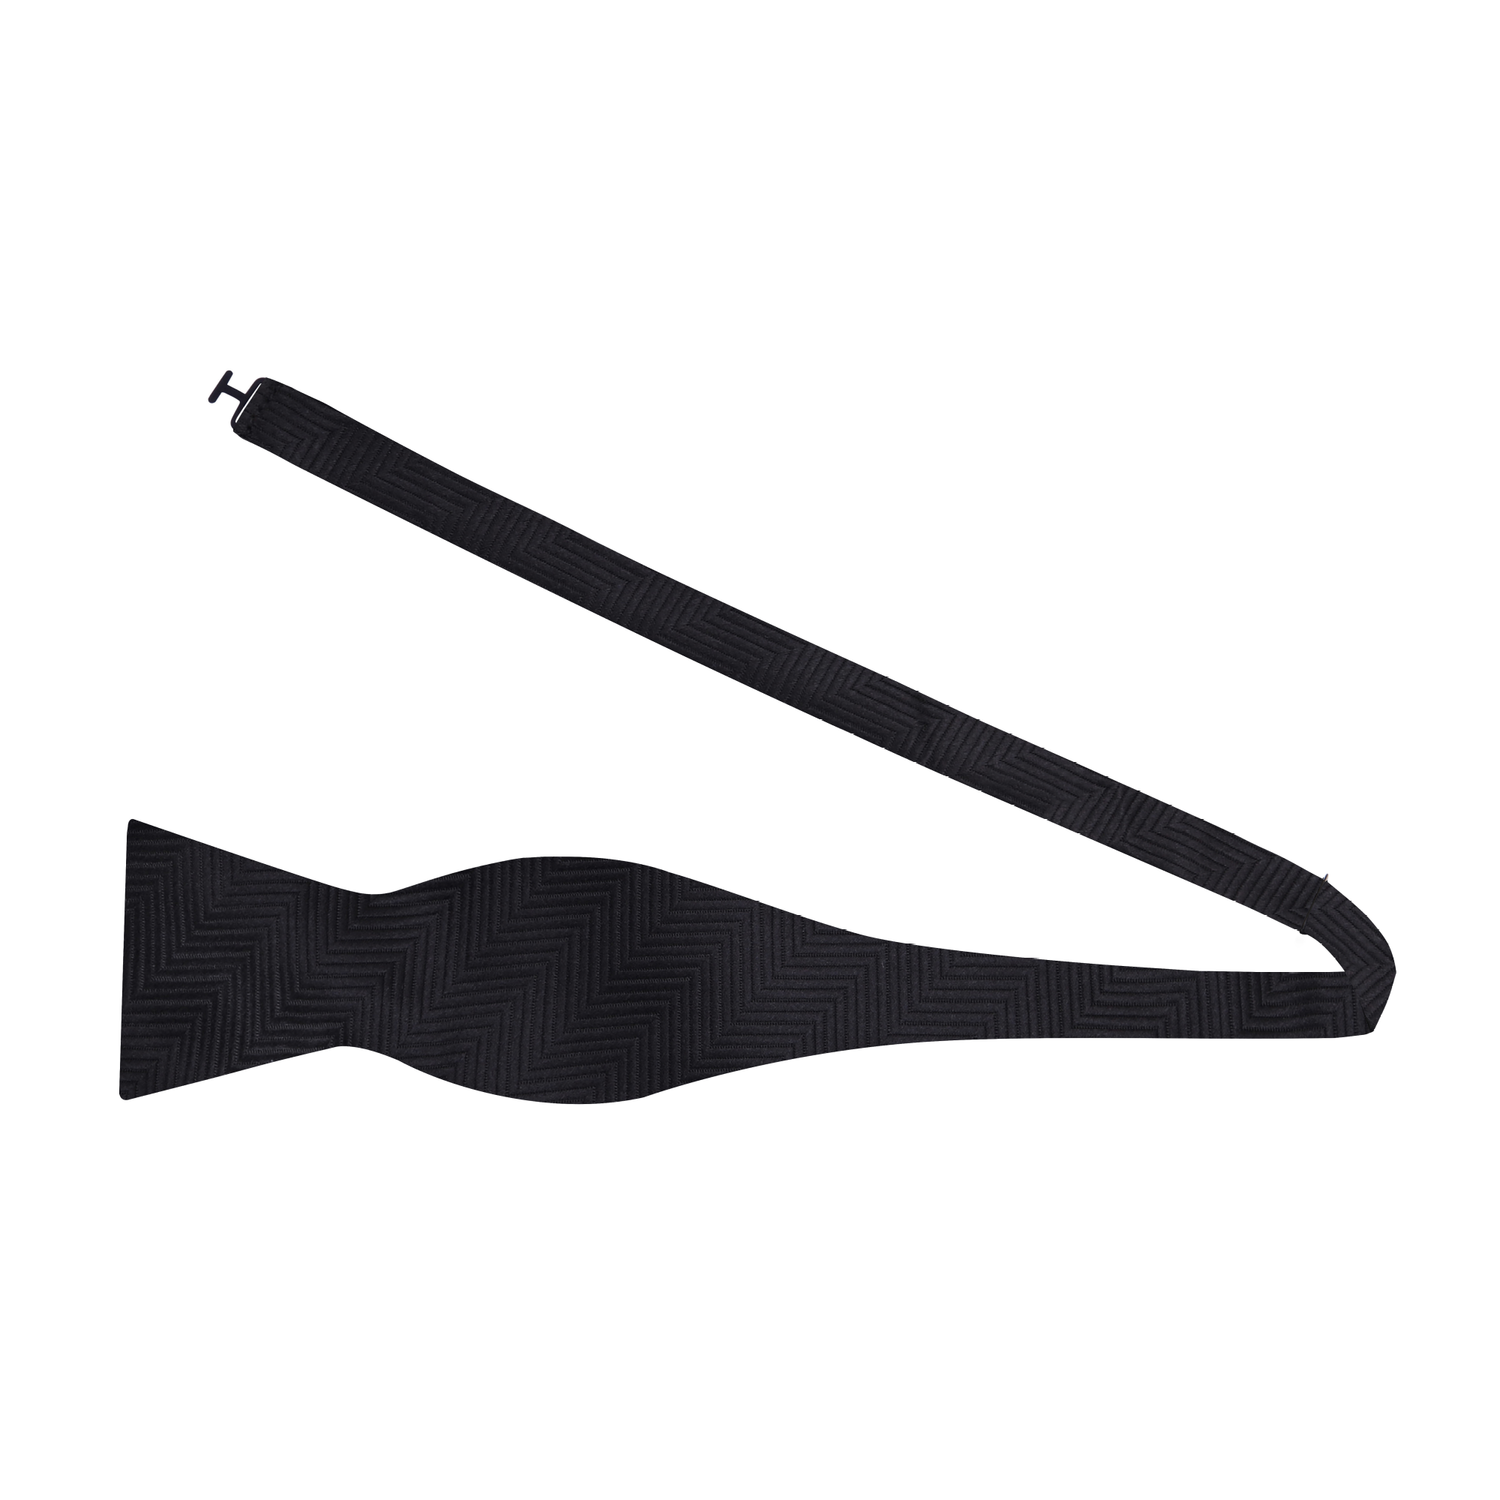 Solid Black Bow Tie Self Tie